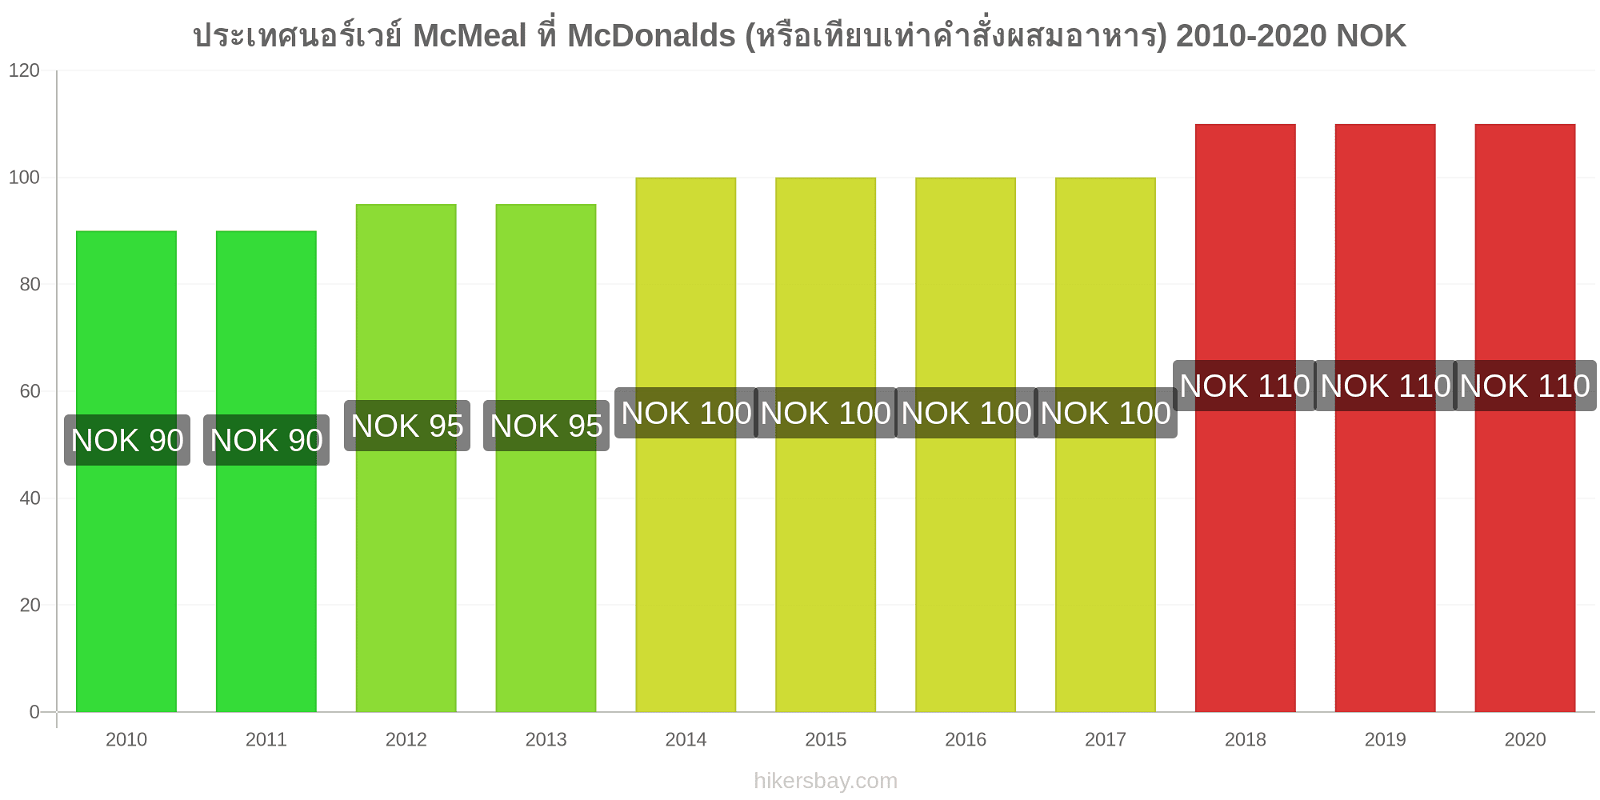 ประเทศนอร์เวย์ การเปลี่ยนแปลงราคา McMeal ที่ McDonalds (หรือเทียบเท่าคำสั่งผสมอาหาร) hikersbay.com